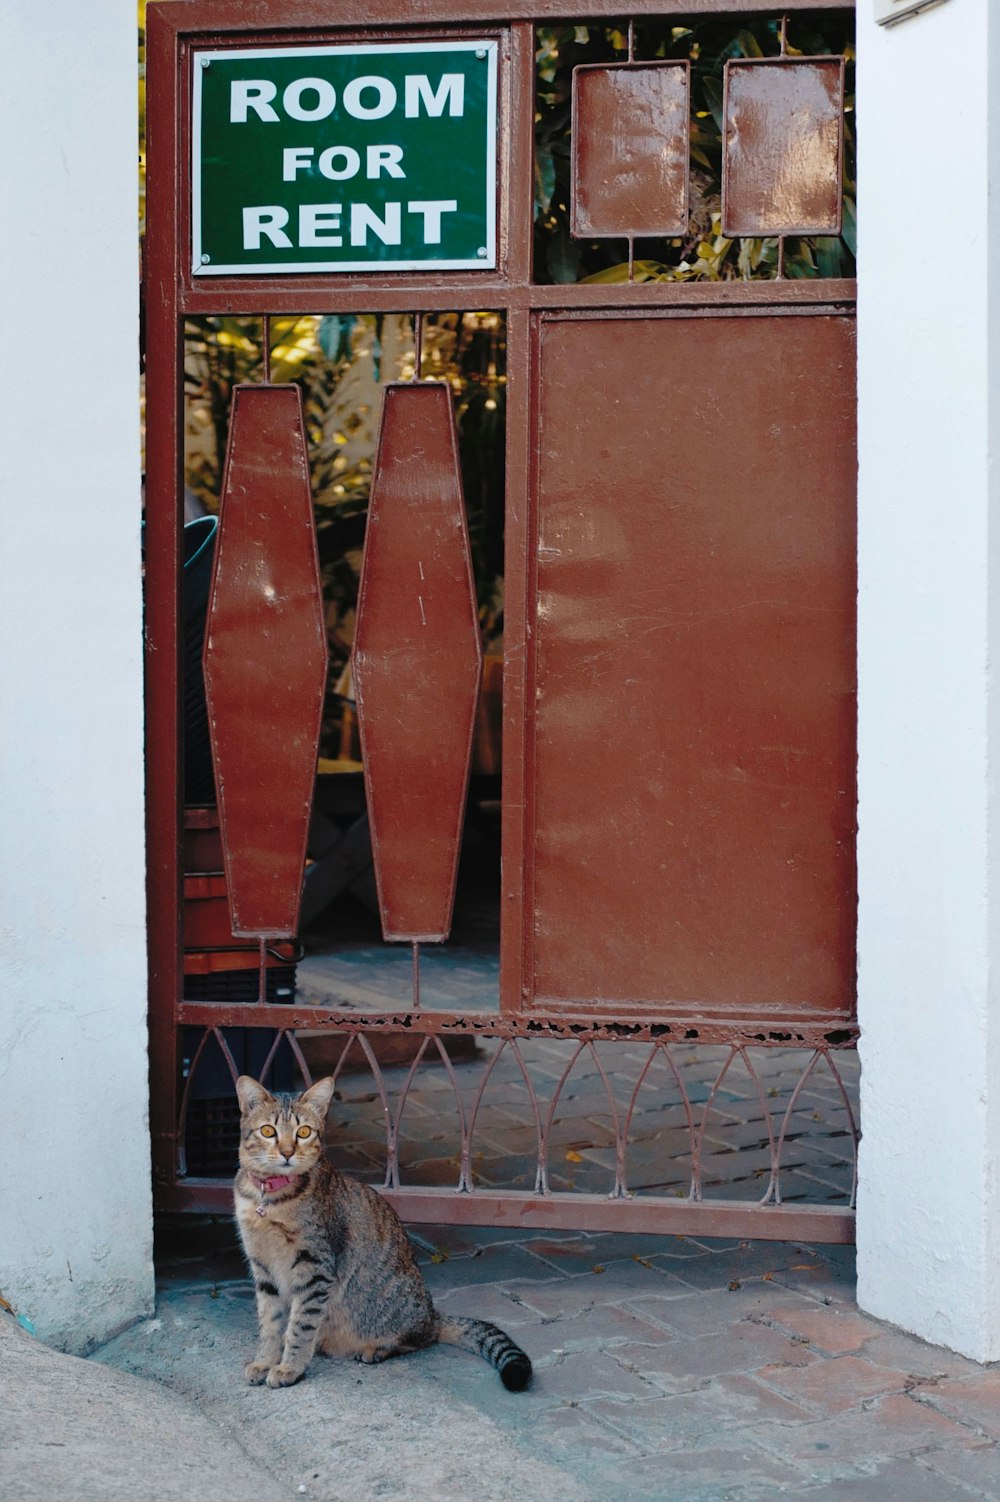 gray tabby cat sitting near steel gate